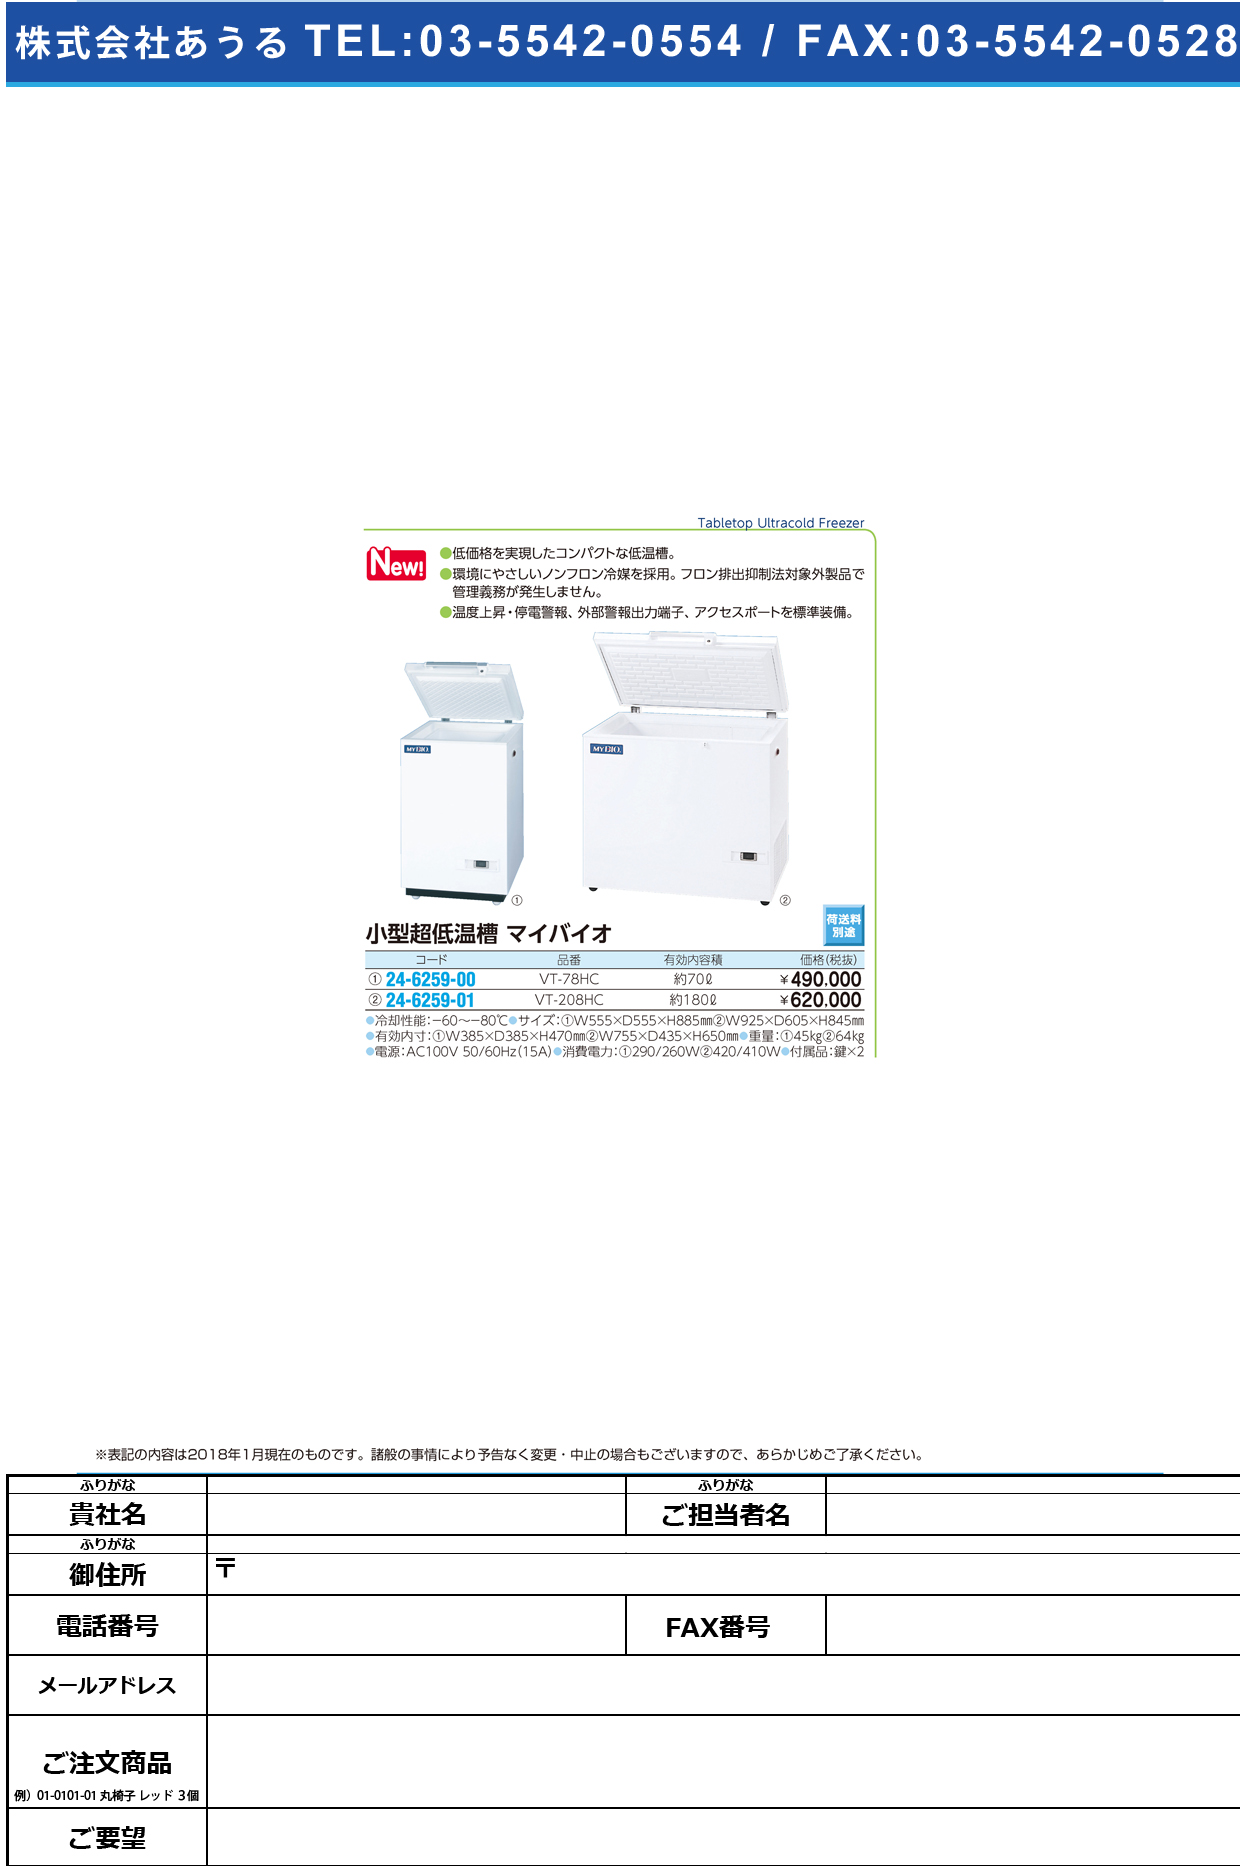 (24-6259-00)小型低温槽マイバイオ VT-78HC(70L) ｺｶﾞﾀﾃｲｵﾝｿｳﾏｲﾊﾞｲｵ(日本フリーザー)【1台単位】【2019年カタログ商品】